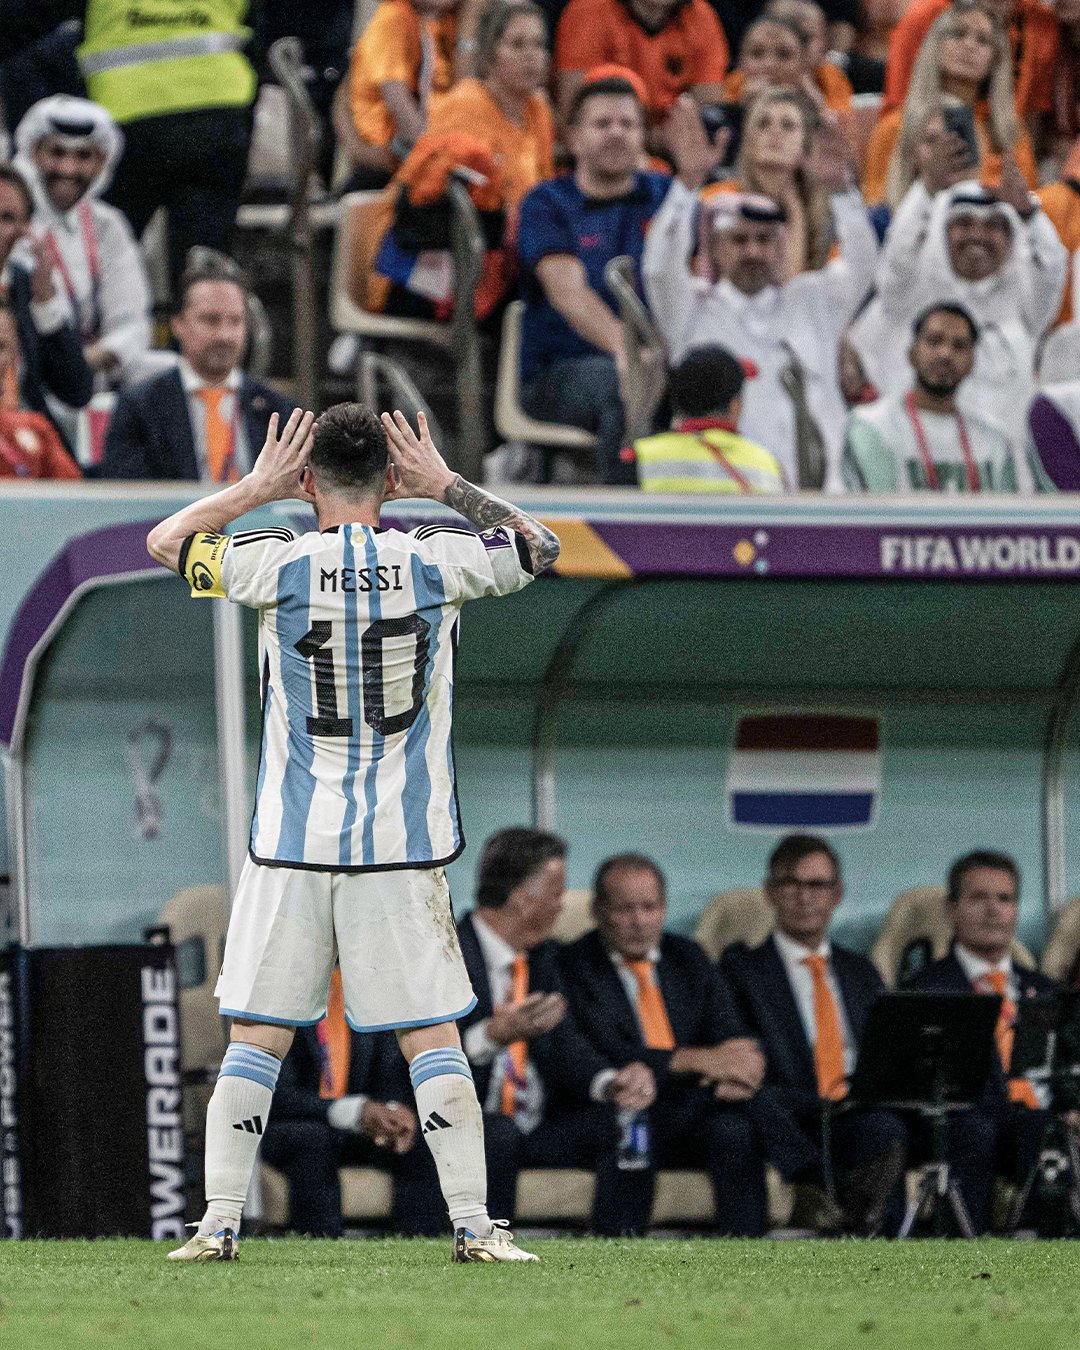 Hãy khám phá sự thật đằng sau hình ảnh của Lionel Messi khi anh ăn mừng cùng với tuyển Hà Lan. Không chỉ là một người chơi xuất sắc, Messi còn là một nhân vật đầy đủ tính cách và trách nhiệm. Được ví như \